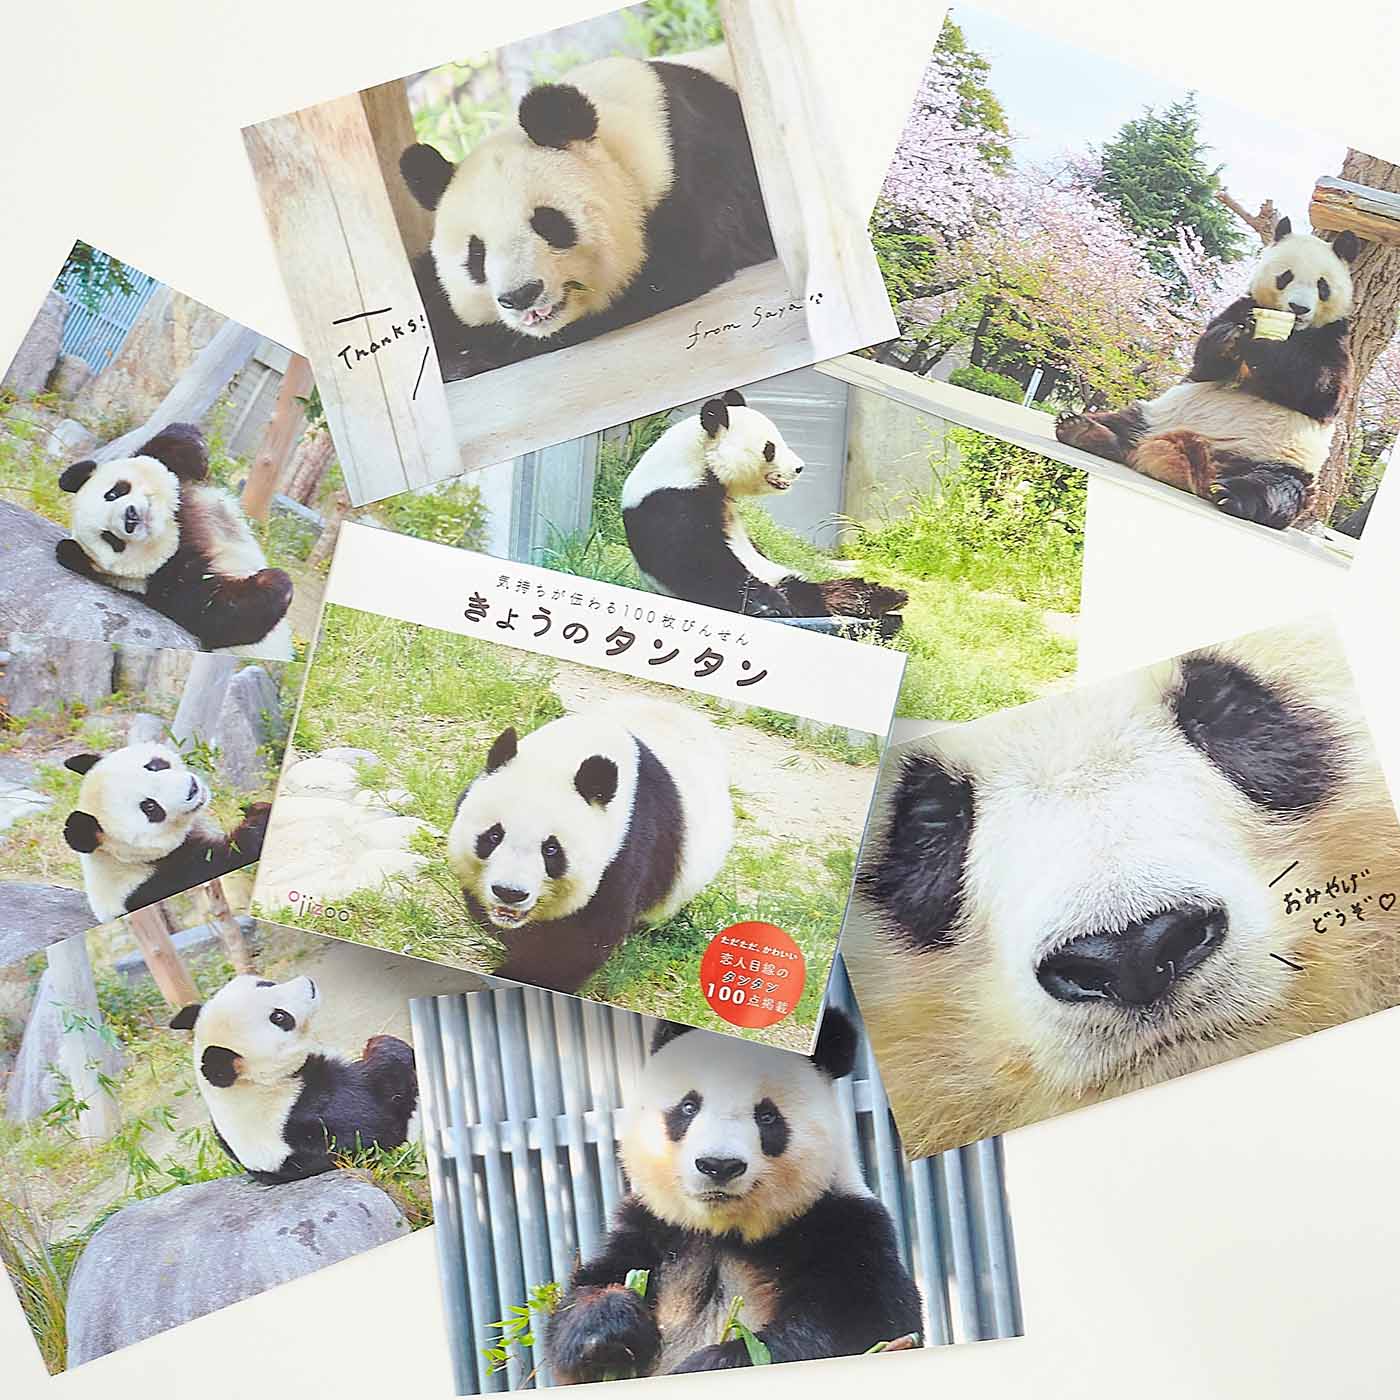 飼育員さんの愛から生まれた 神戸市立王子動物園のパンダ・タンタンの